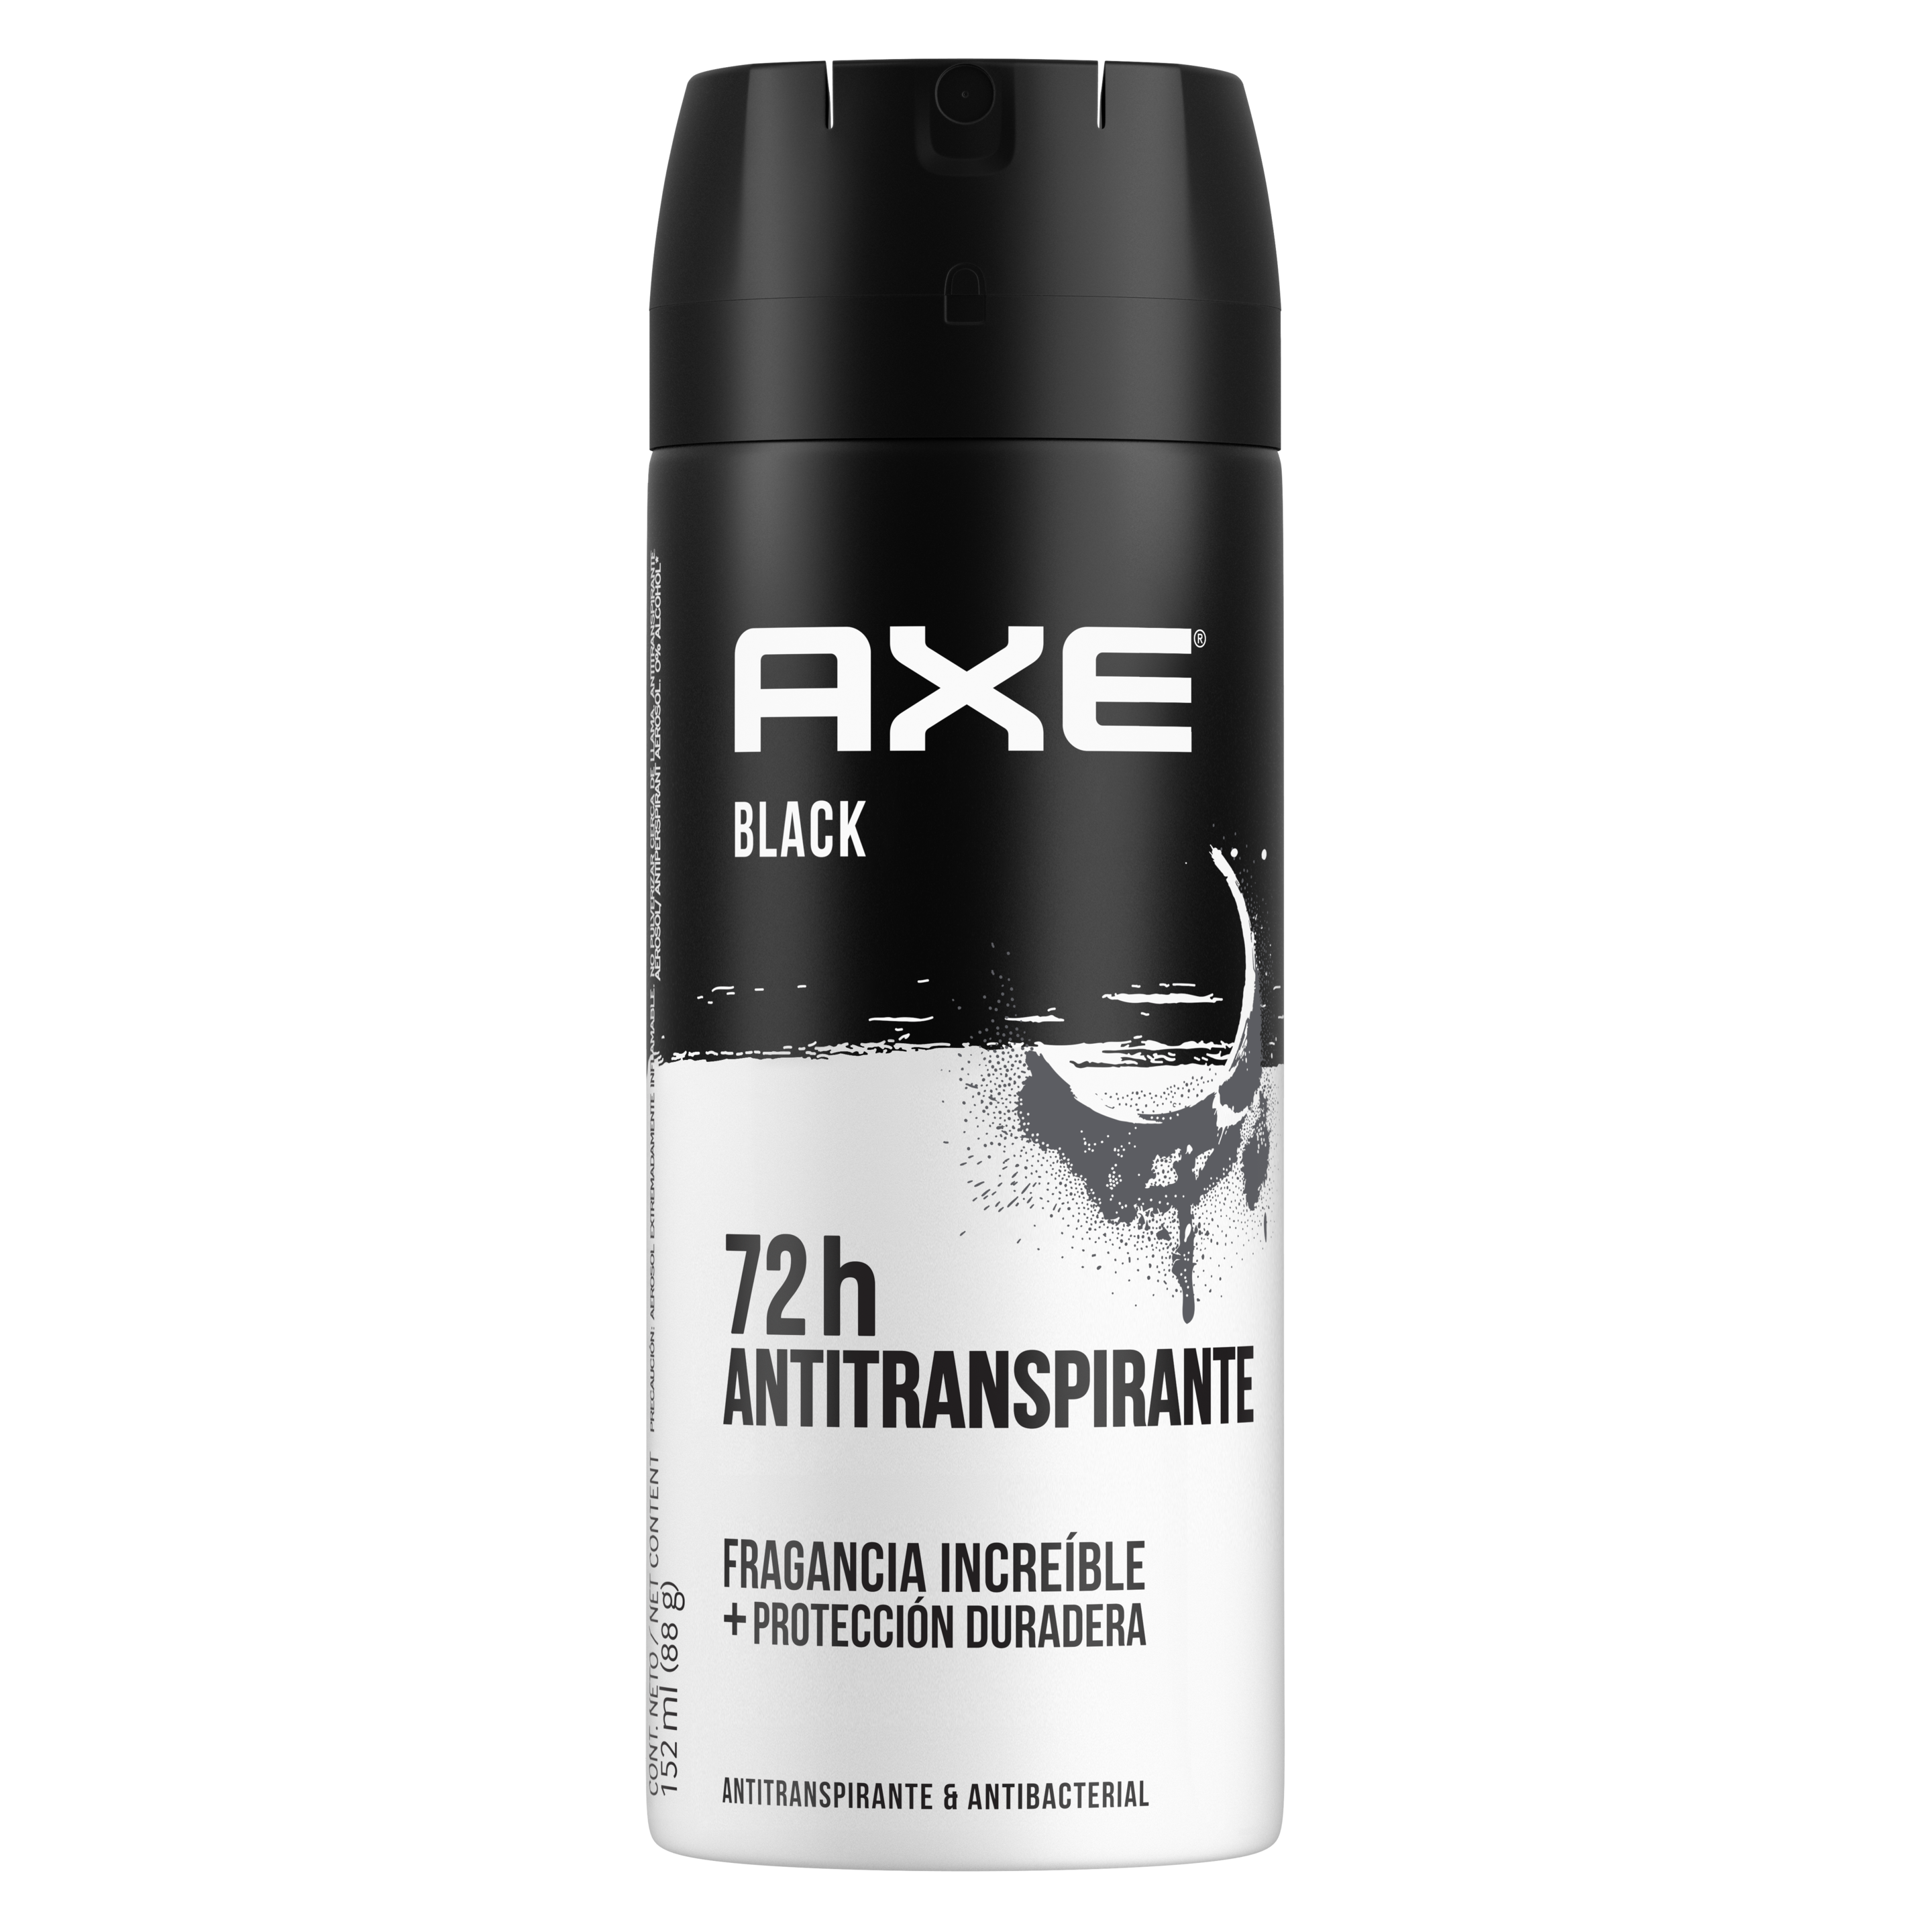 Imagen de aerosol Axe Desodorante Antitranspirante Black 152ml